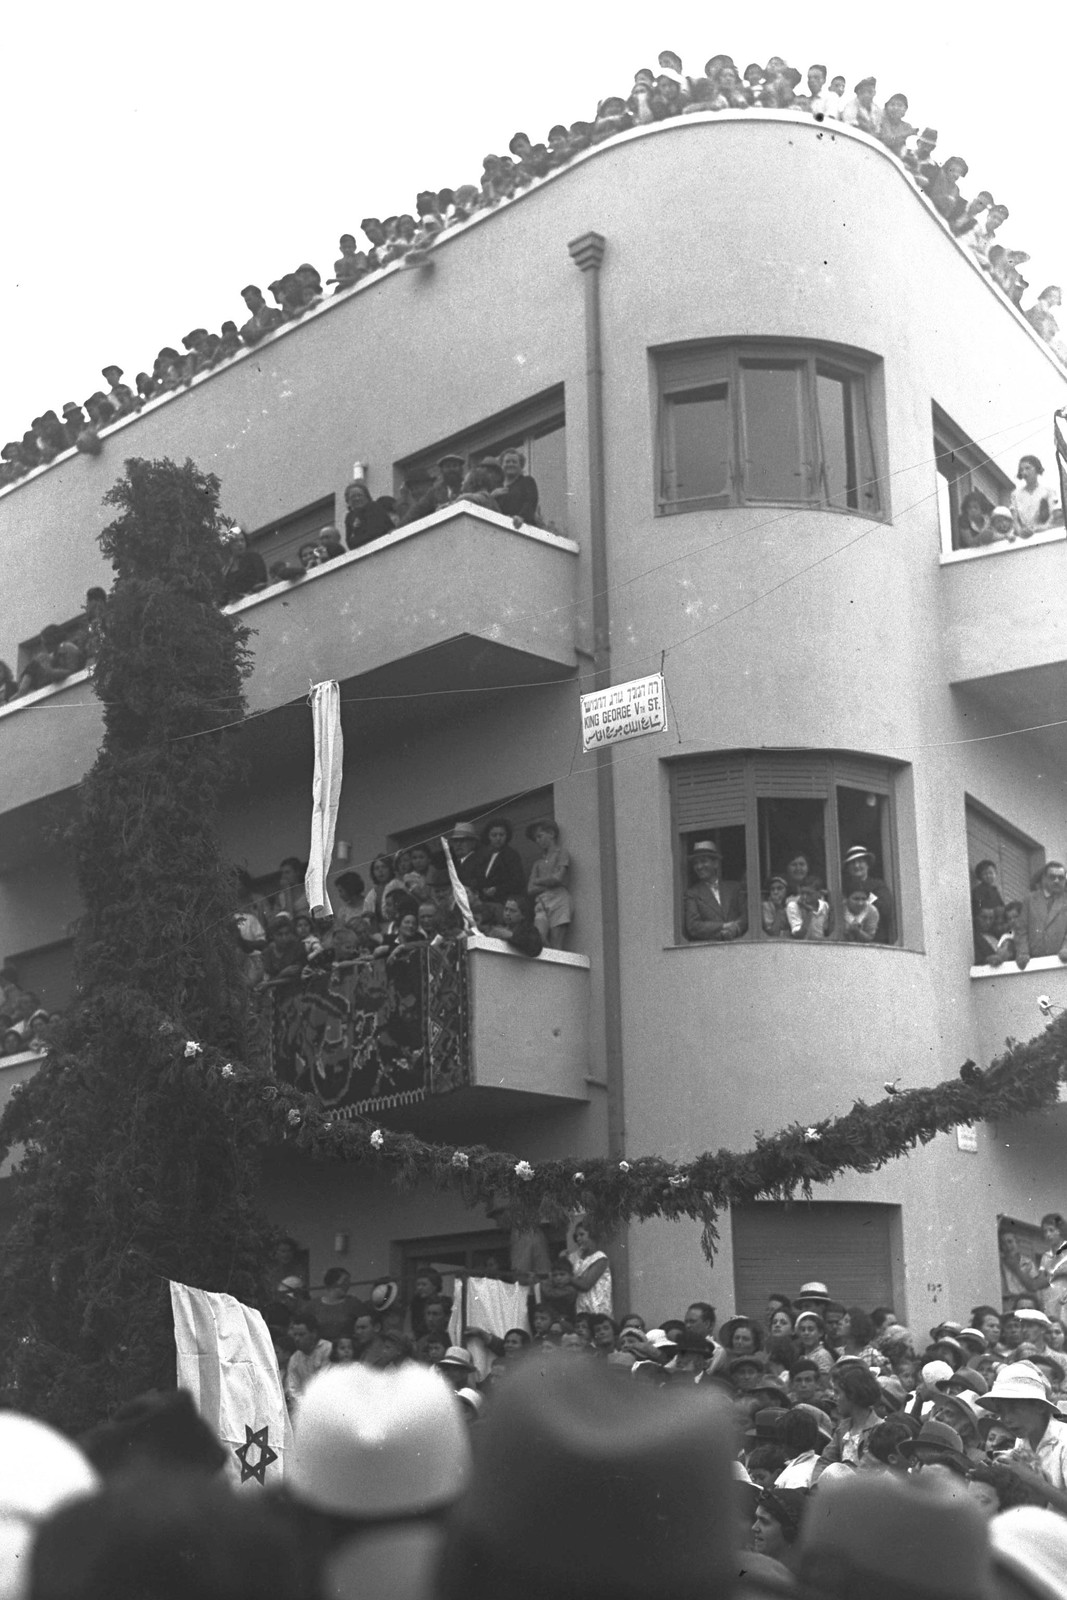 1935. Церемония открытия улицы «Кинг Джордж» в Тель-Авиве. На фото жители Тель-Авива наблюдают за церемонией с балконов и крыш домов.